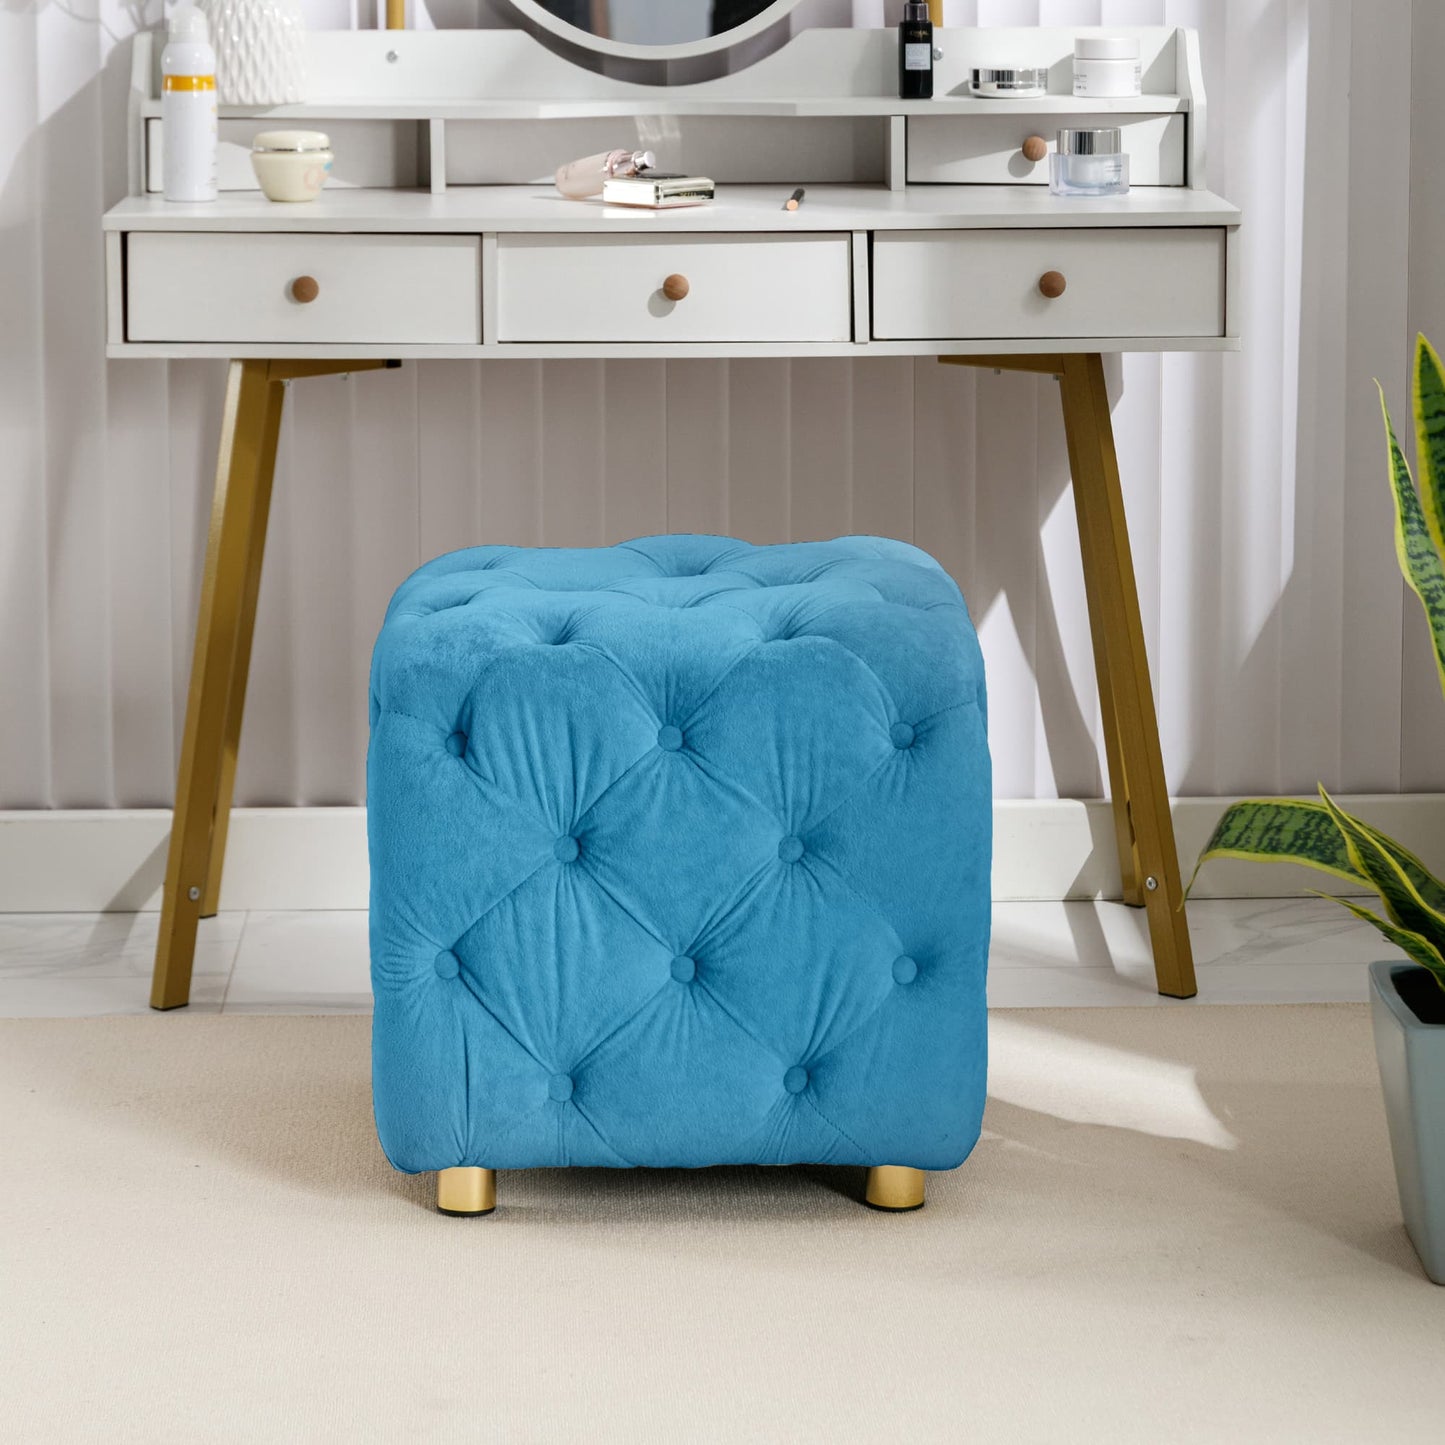 Modern Velvet Upholstered Square Ottoman, Exquisite Small Soft Foot Stool- Blue